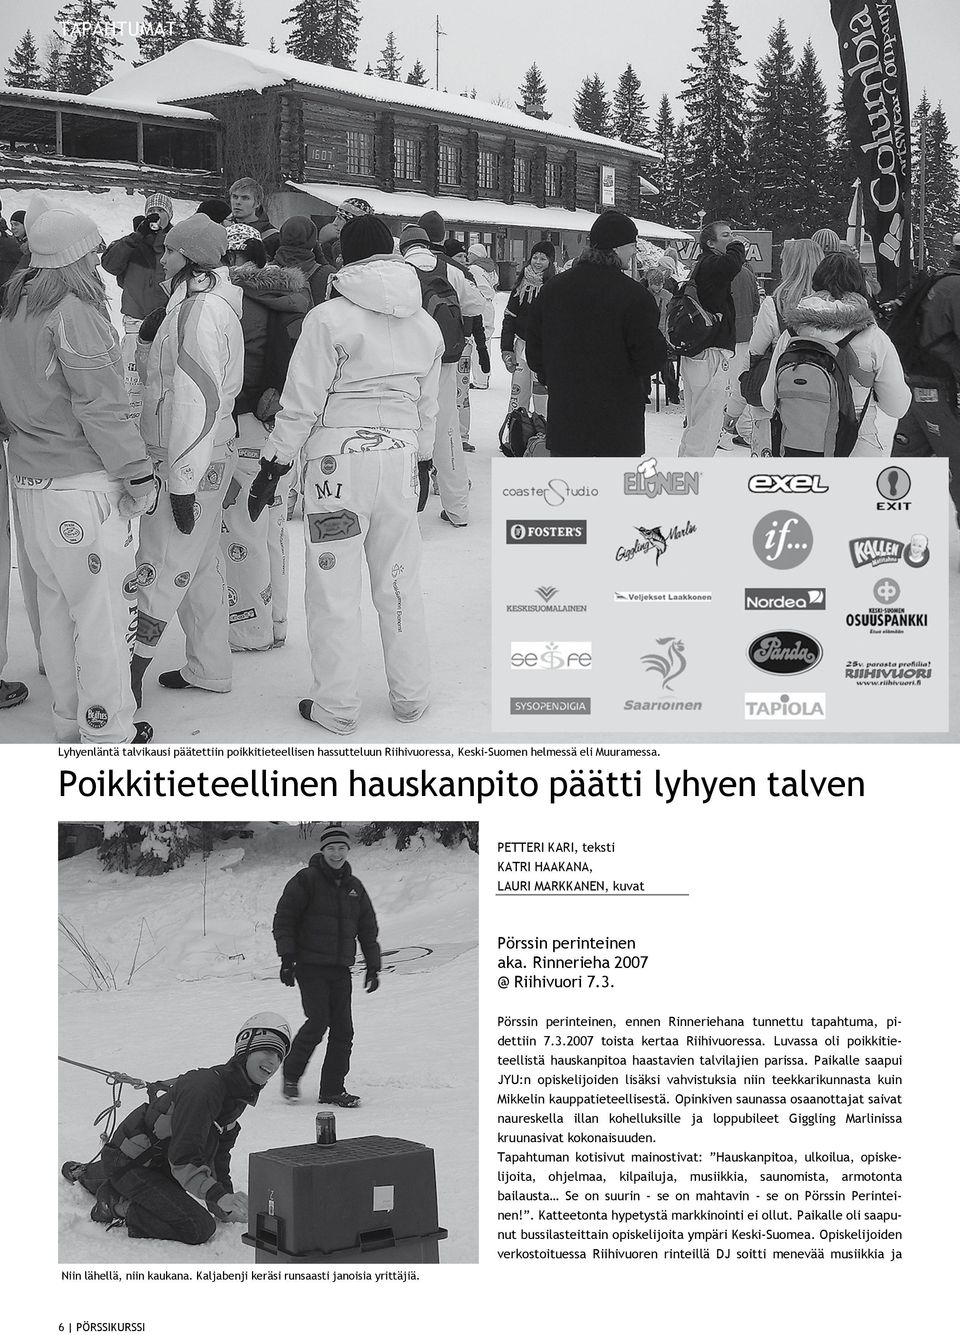 Pörssin perinteinen, ennen Rinneriehana tunnettu tapahtuma, pidettiin 7.3.2007 toista kertaa Riihivuoressa. Luvassa oli poikkitieteellistä hauskanpitoa haastavien talvilajien parissa.